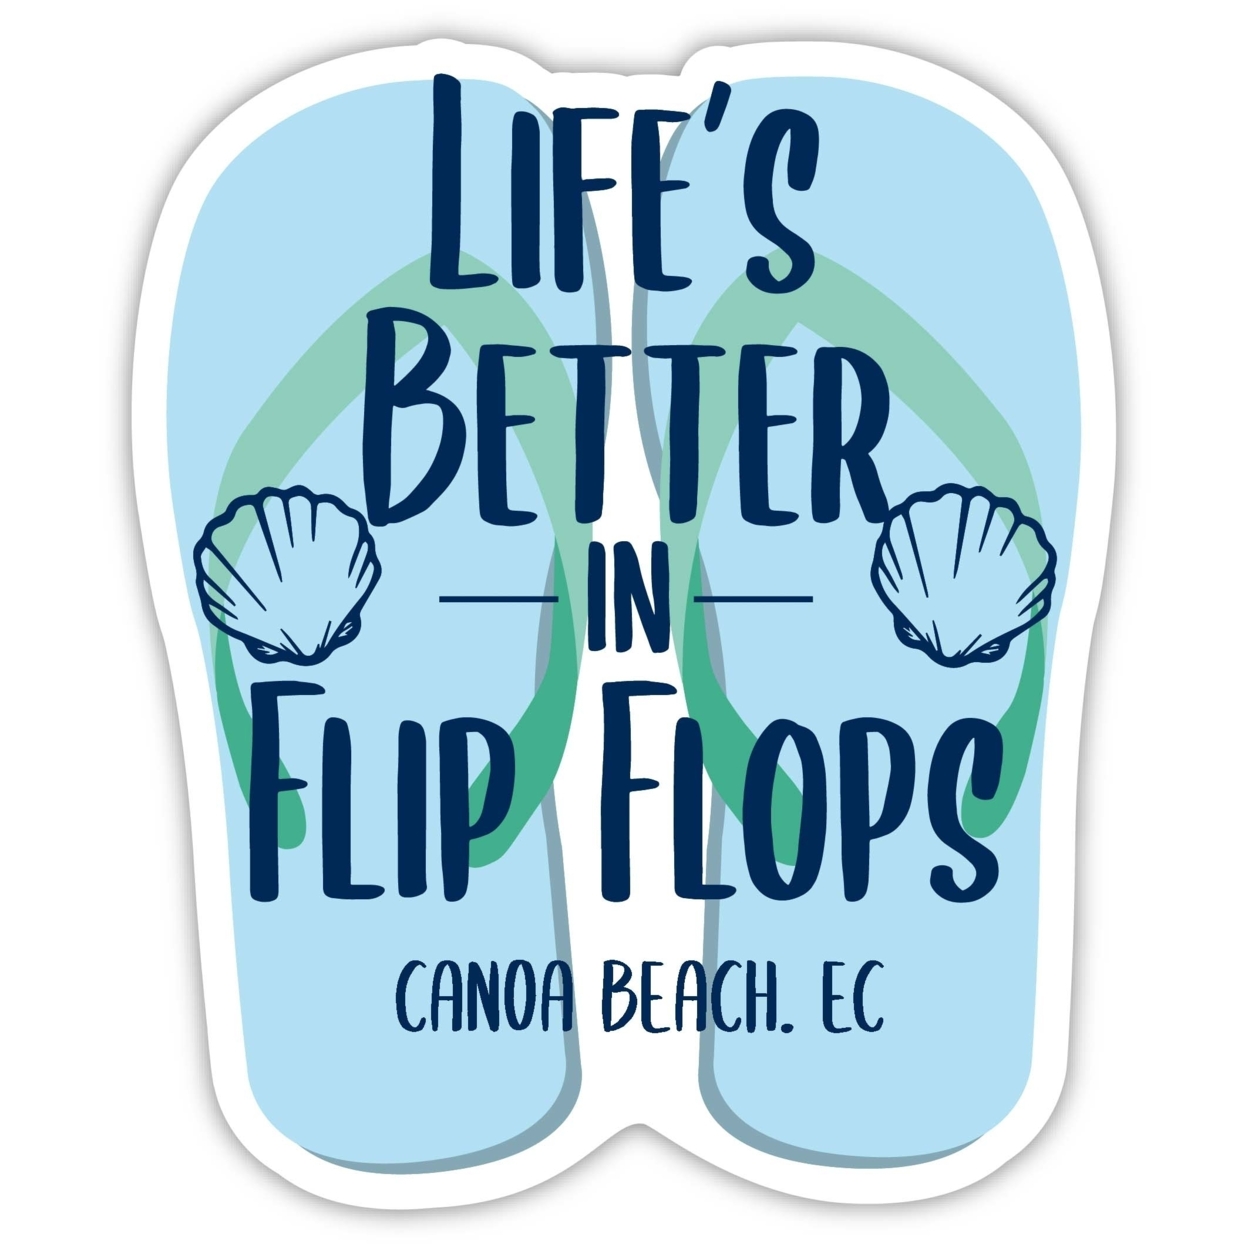 Canoa Beach Ecuador Souvenir 4 Inch Vinyl Decal Sticker Flip Flop Design